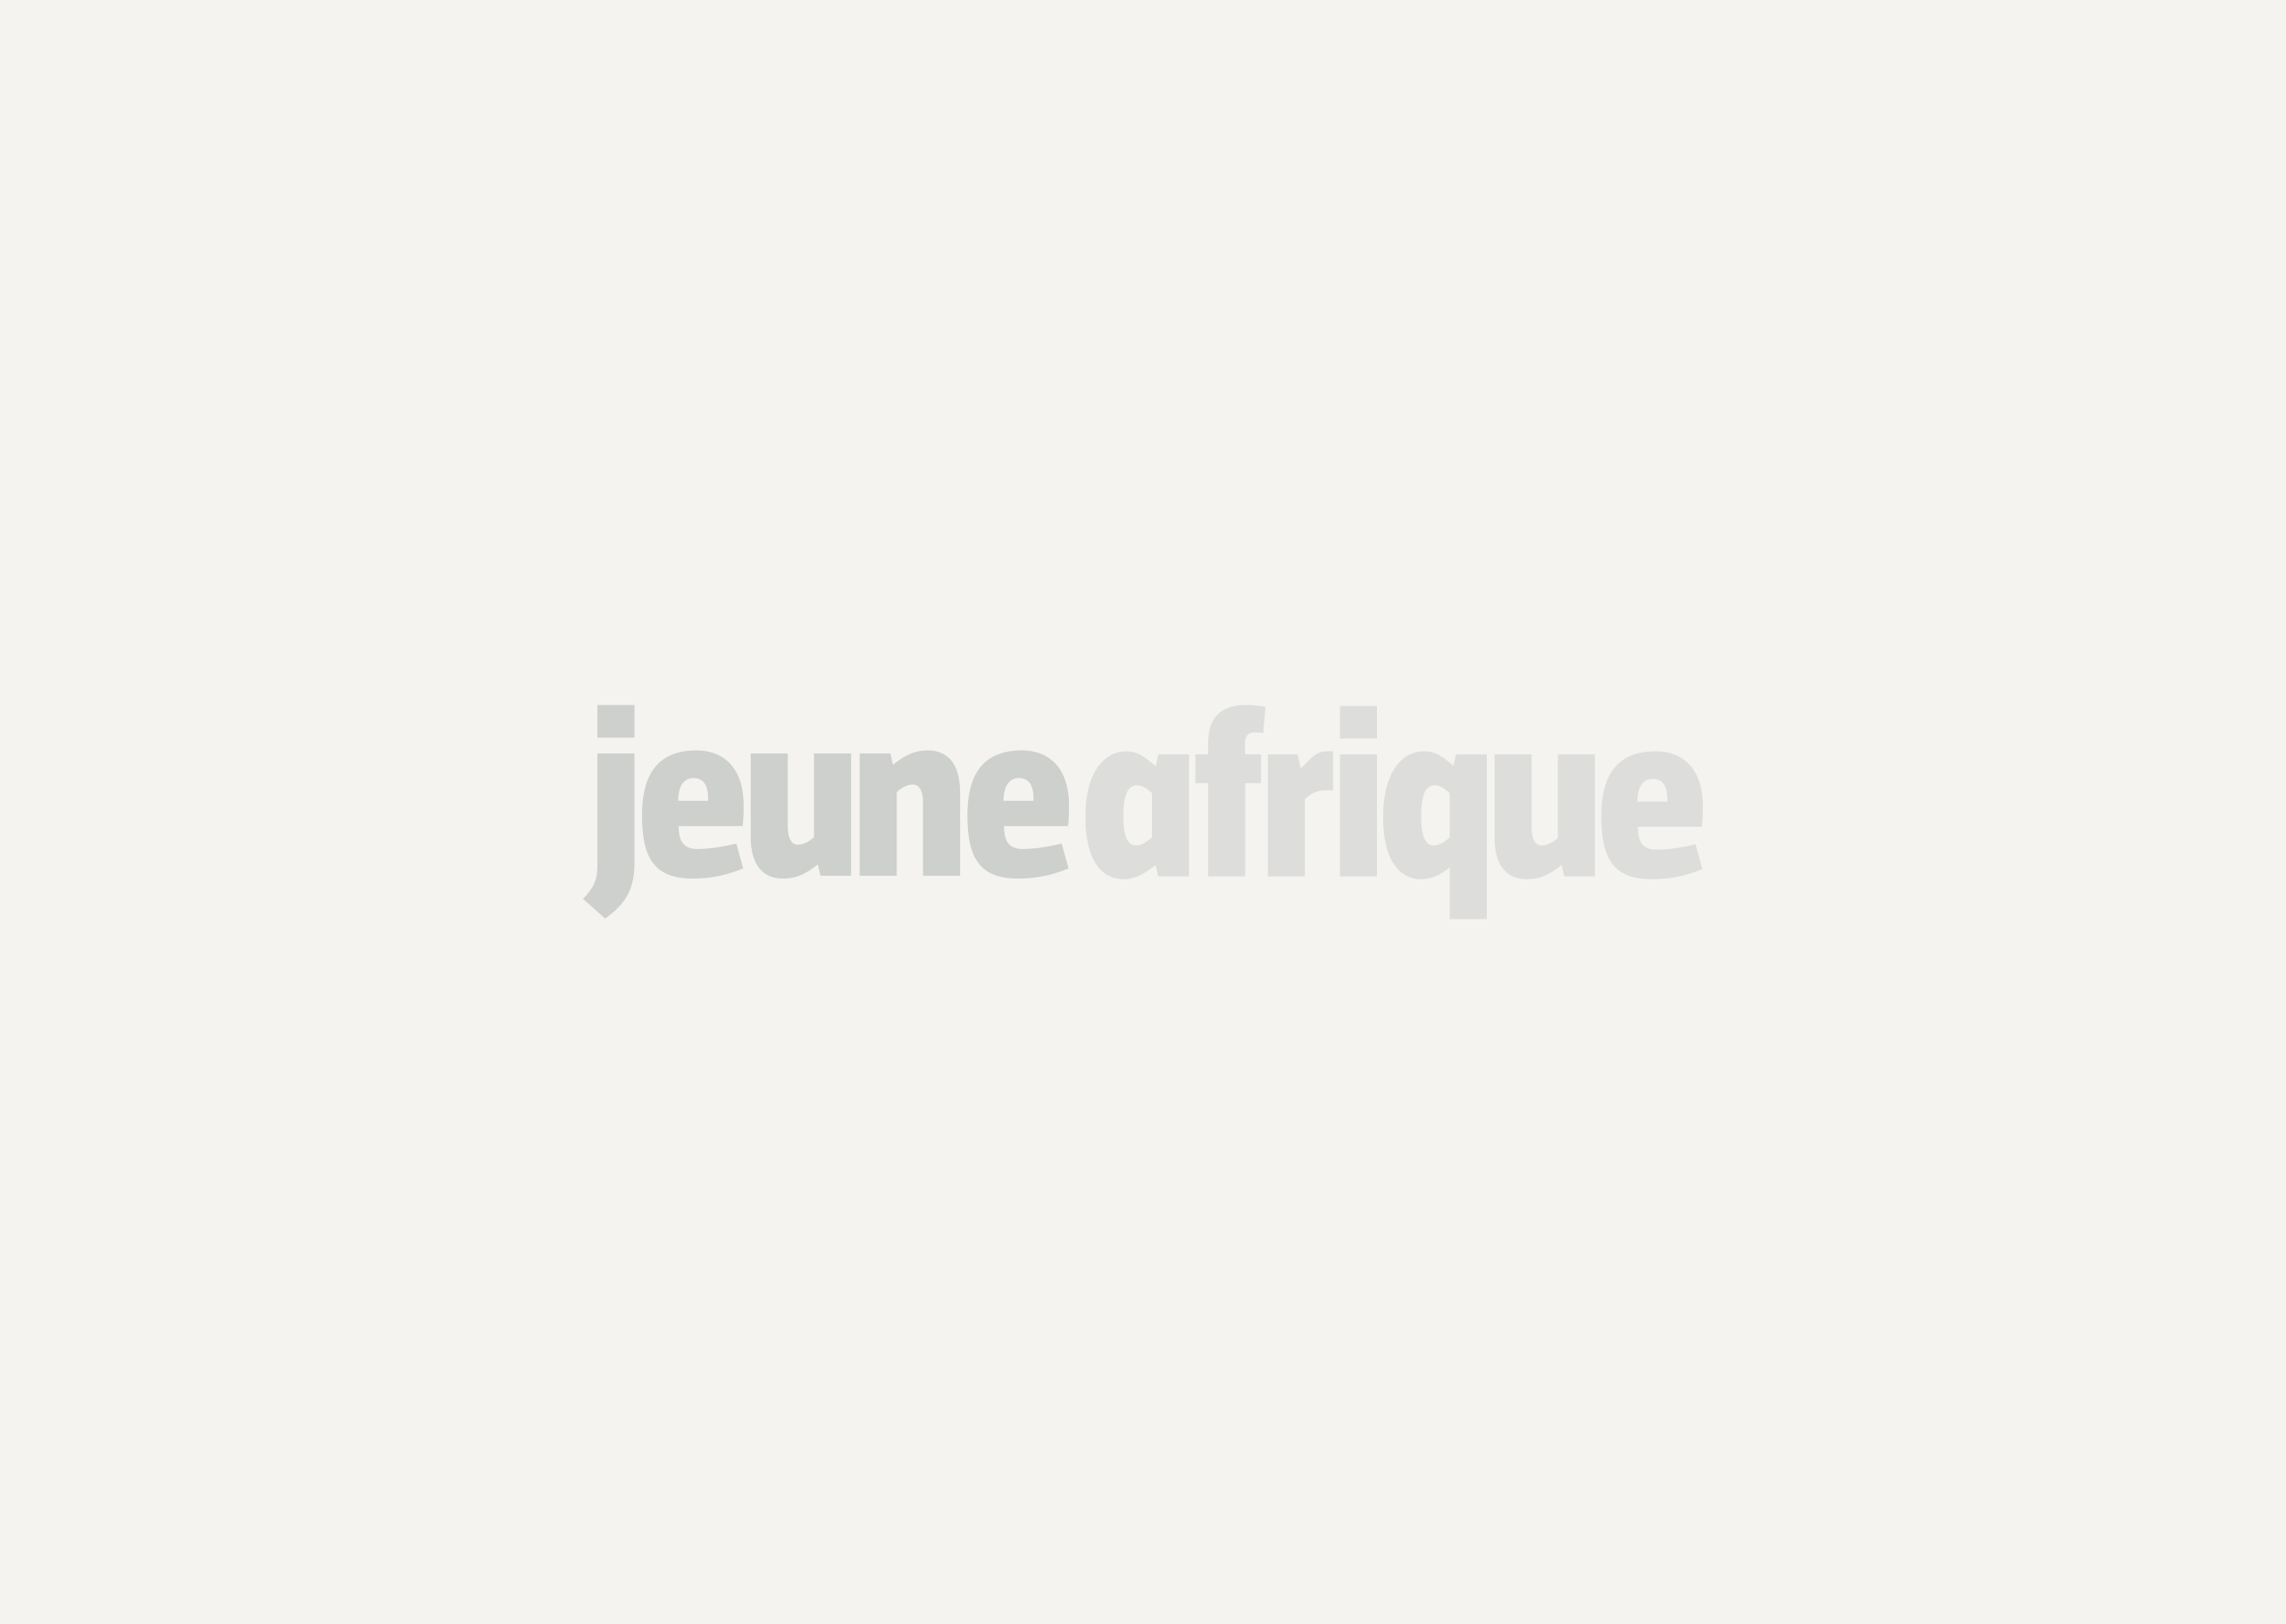 [Tribune] Sénégal : affaire Diary Sow, du buzz compassionnel au bad buzz